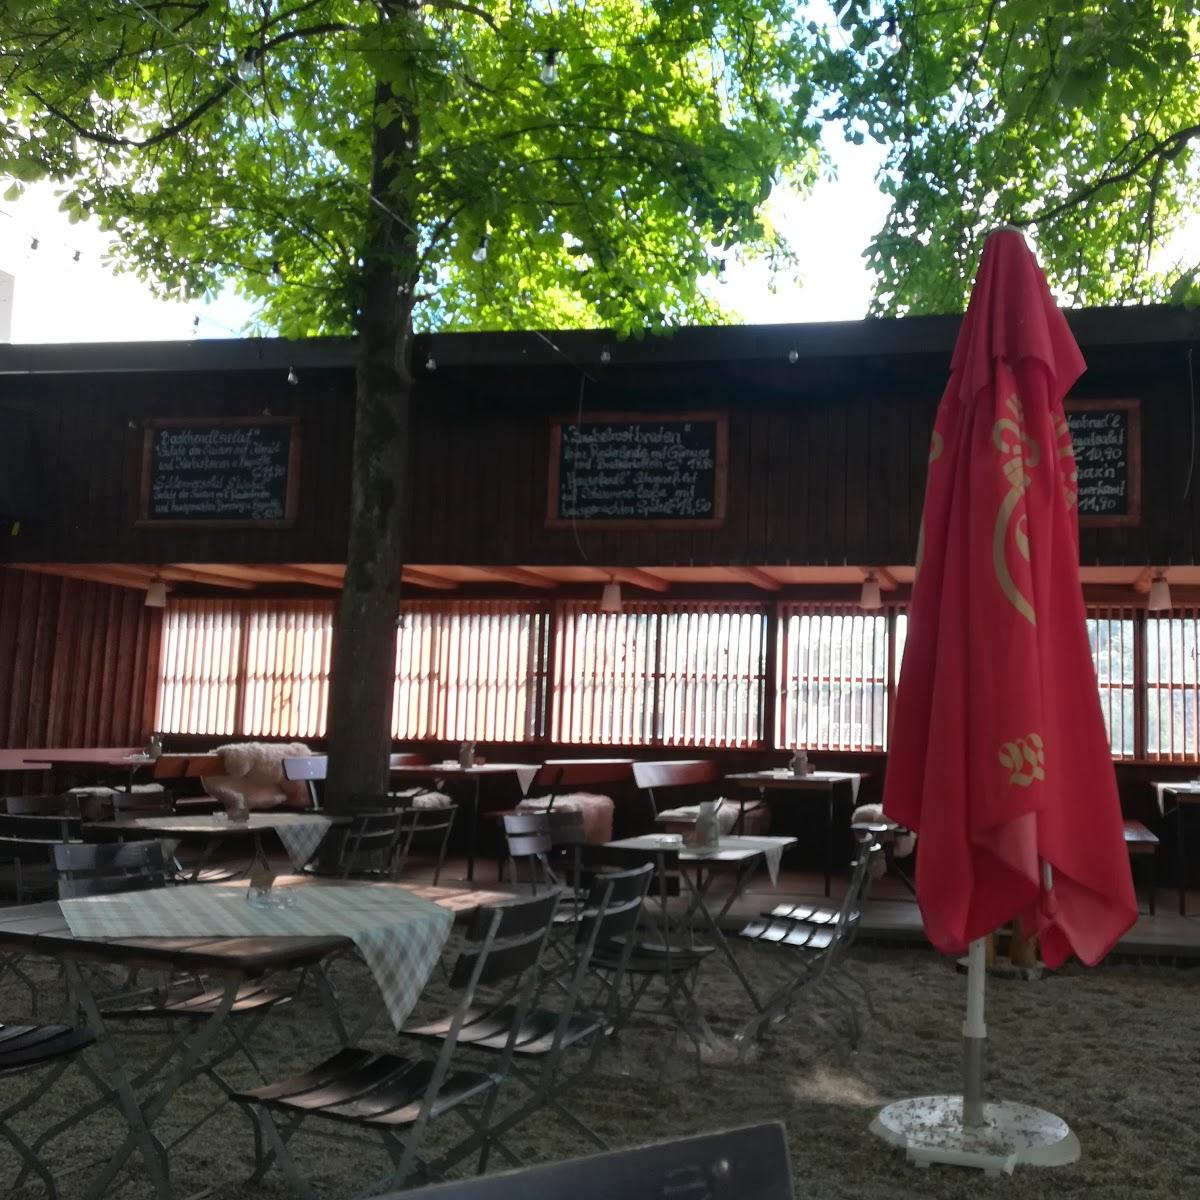 Restaurant "Wolferstetter Keller" in Vilshofen an der Donau